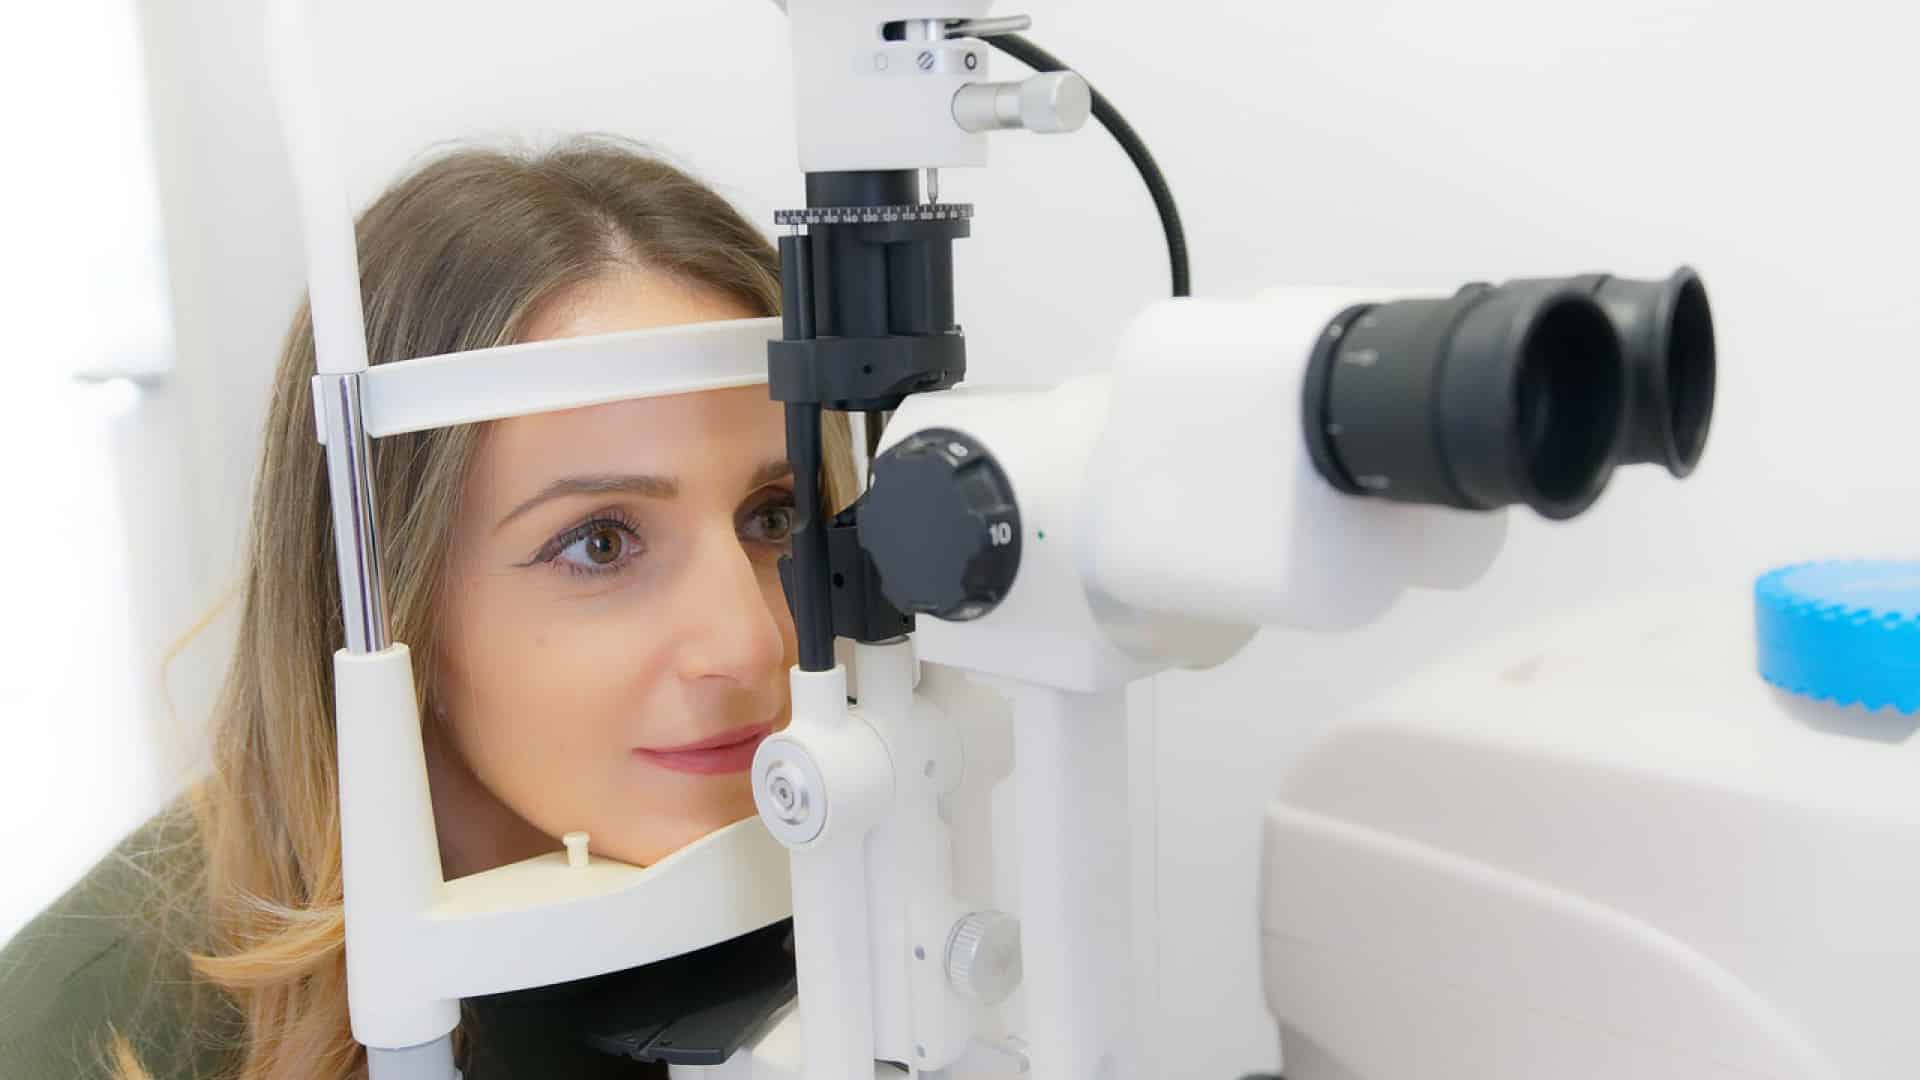 Femme subissant un examen de la vue avec un appareil ophtalmique.